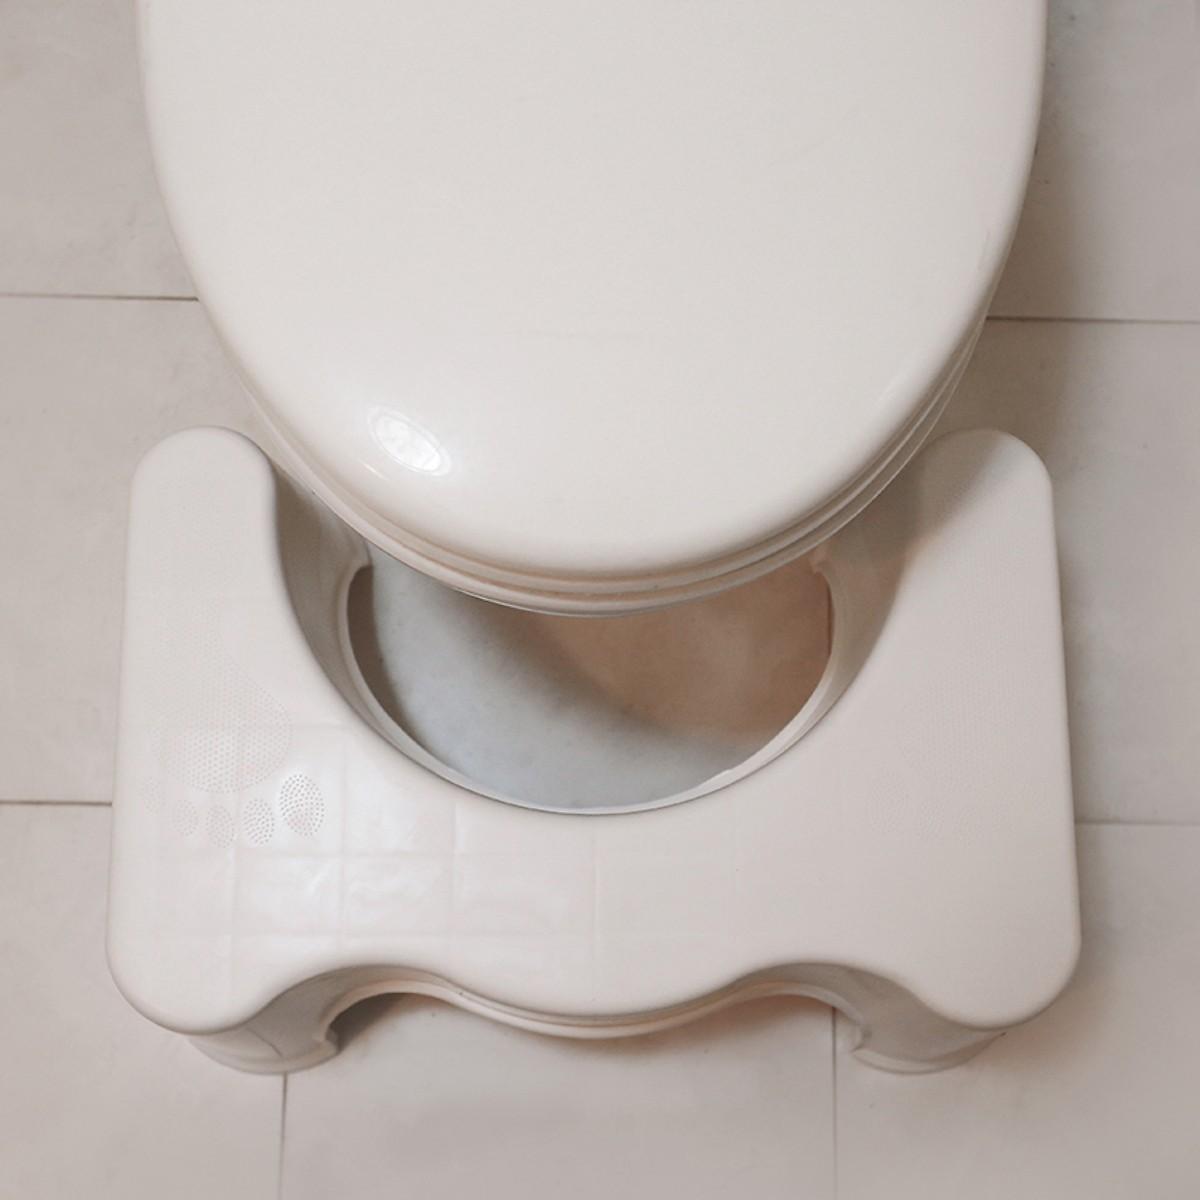 Ghế Kê Chân Toilet Chống Táo Bón Ngăn Ngừa Các Bệnh Tiêu Hóa Khi Đi Vệ Sinh - Giao Hàng Toàn Quốc